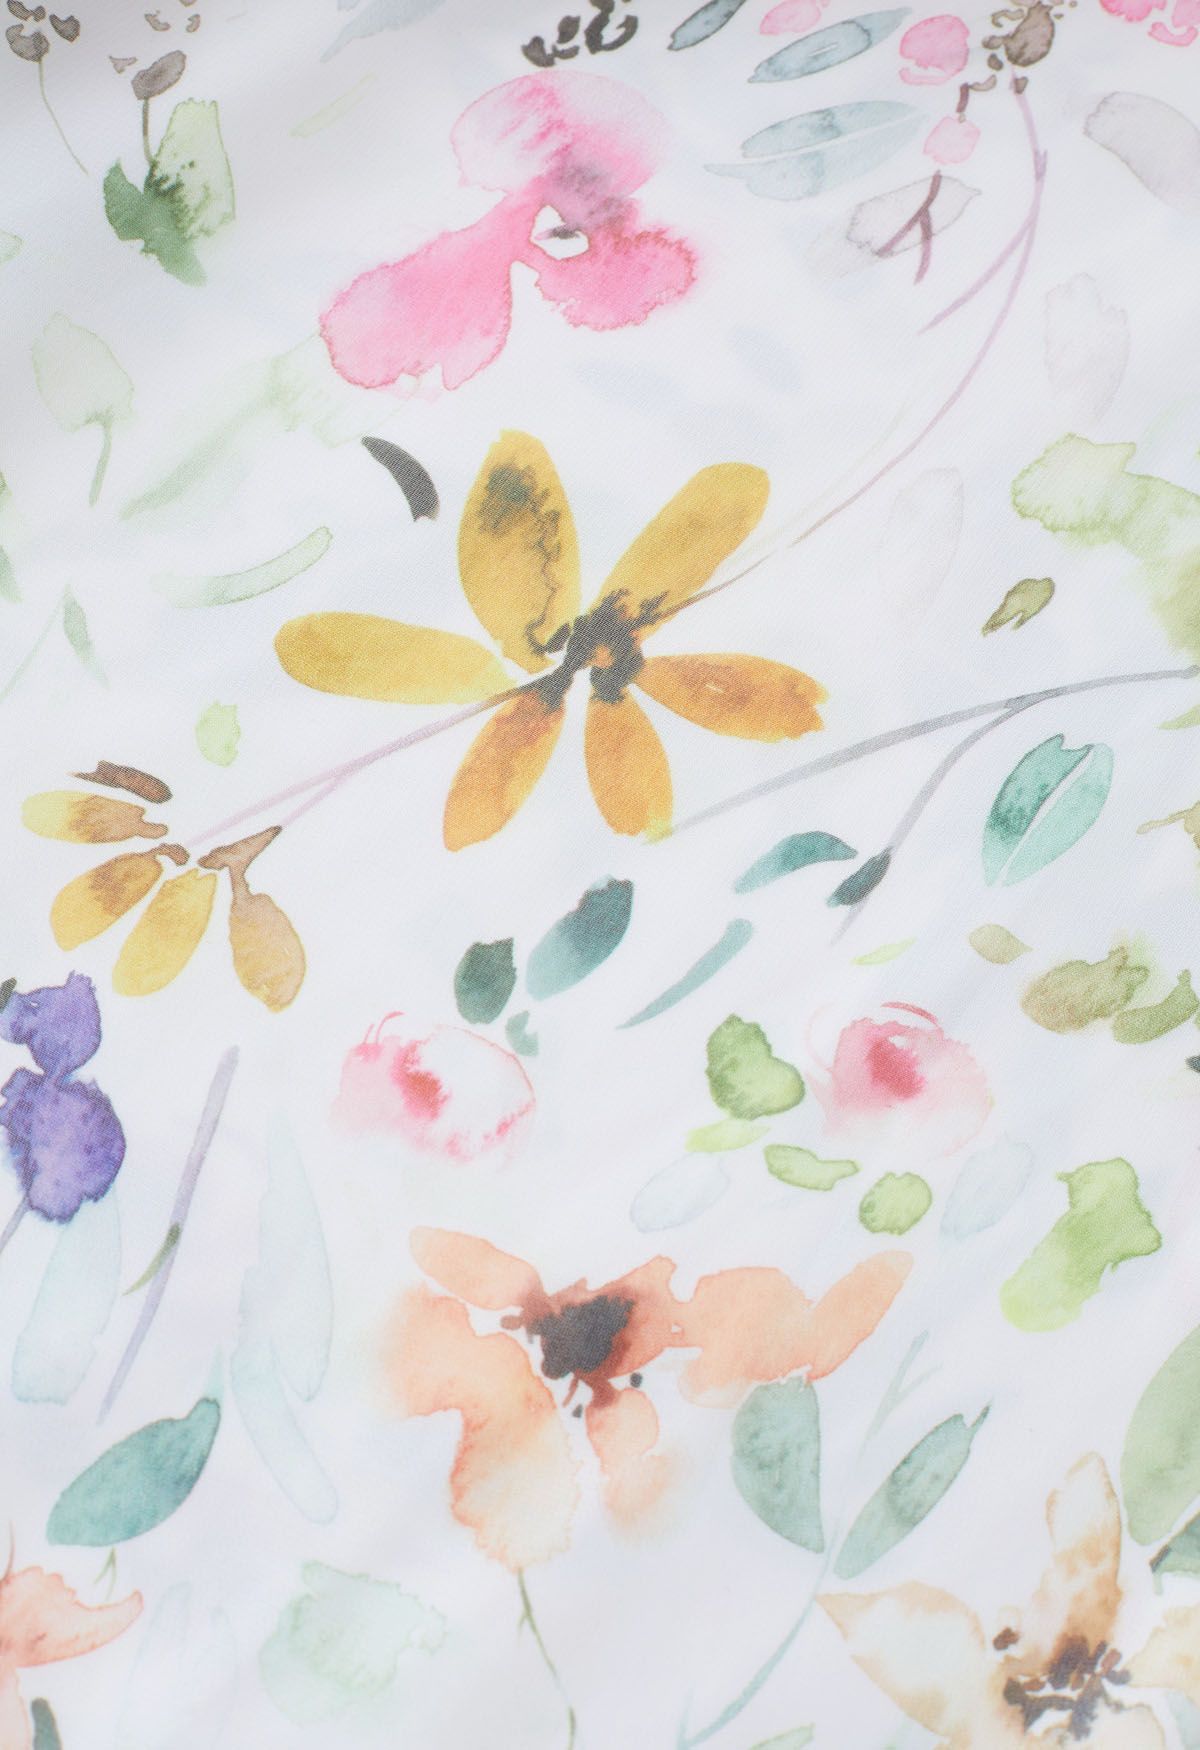 تنورة ماكسي شيفون بطبعة زهور وايلد ألوان مائية